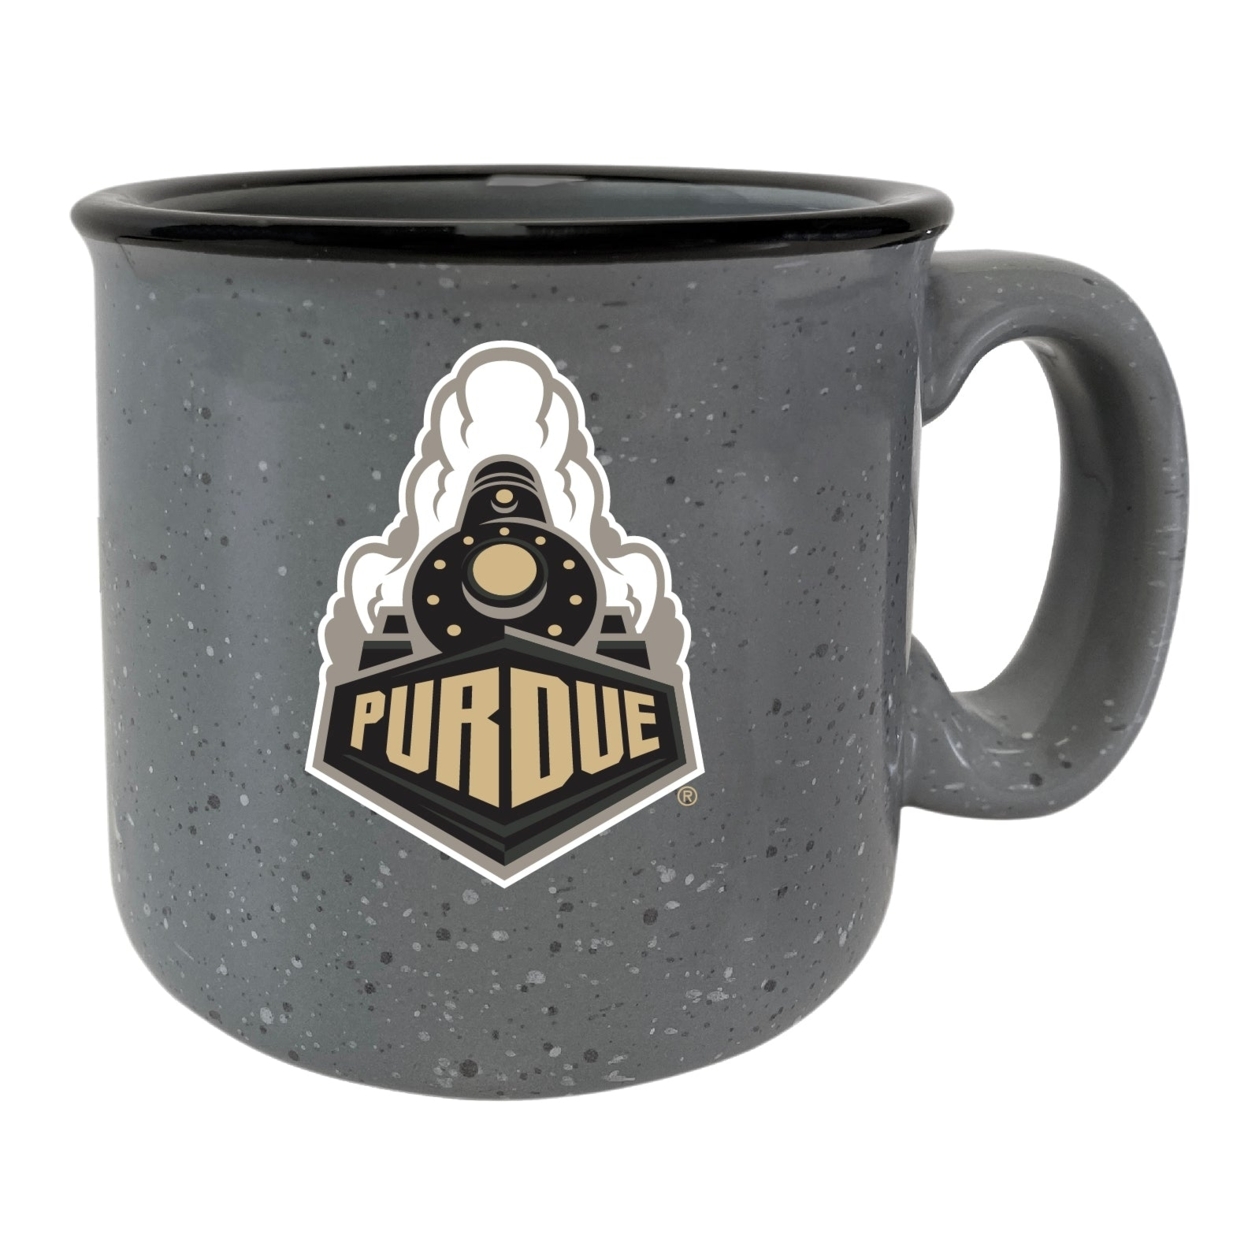 Purdue Boilermakers Speckled Ceramic Camper Coffee Mug - Grey - Navy